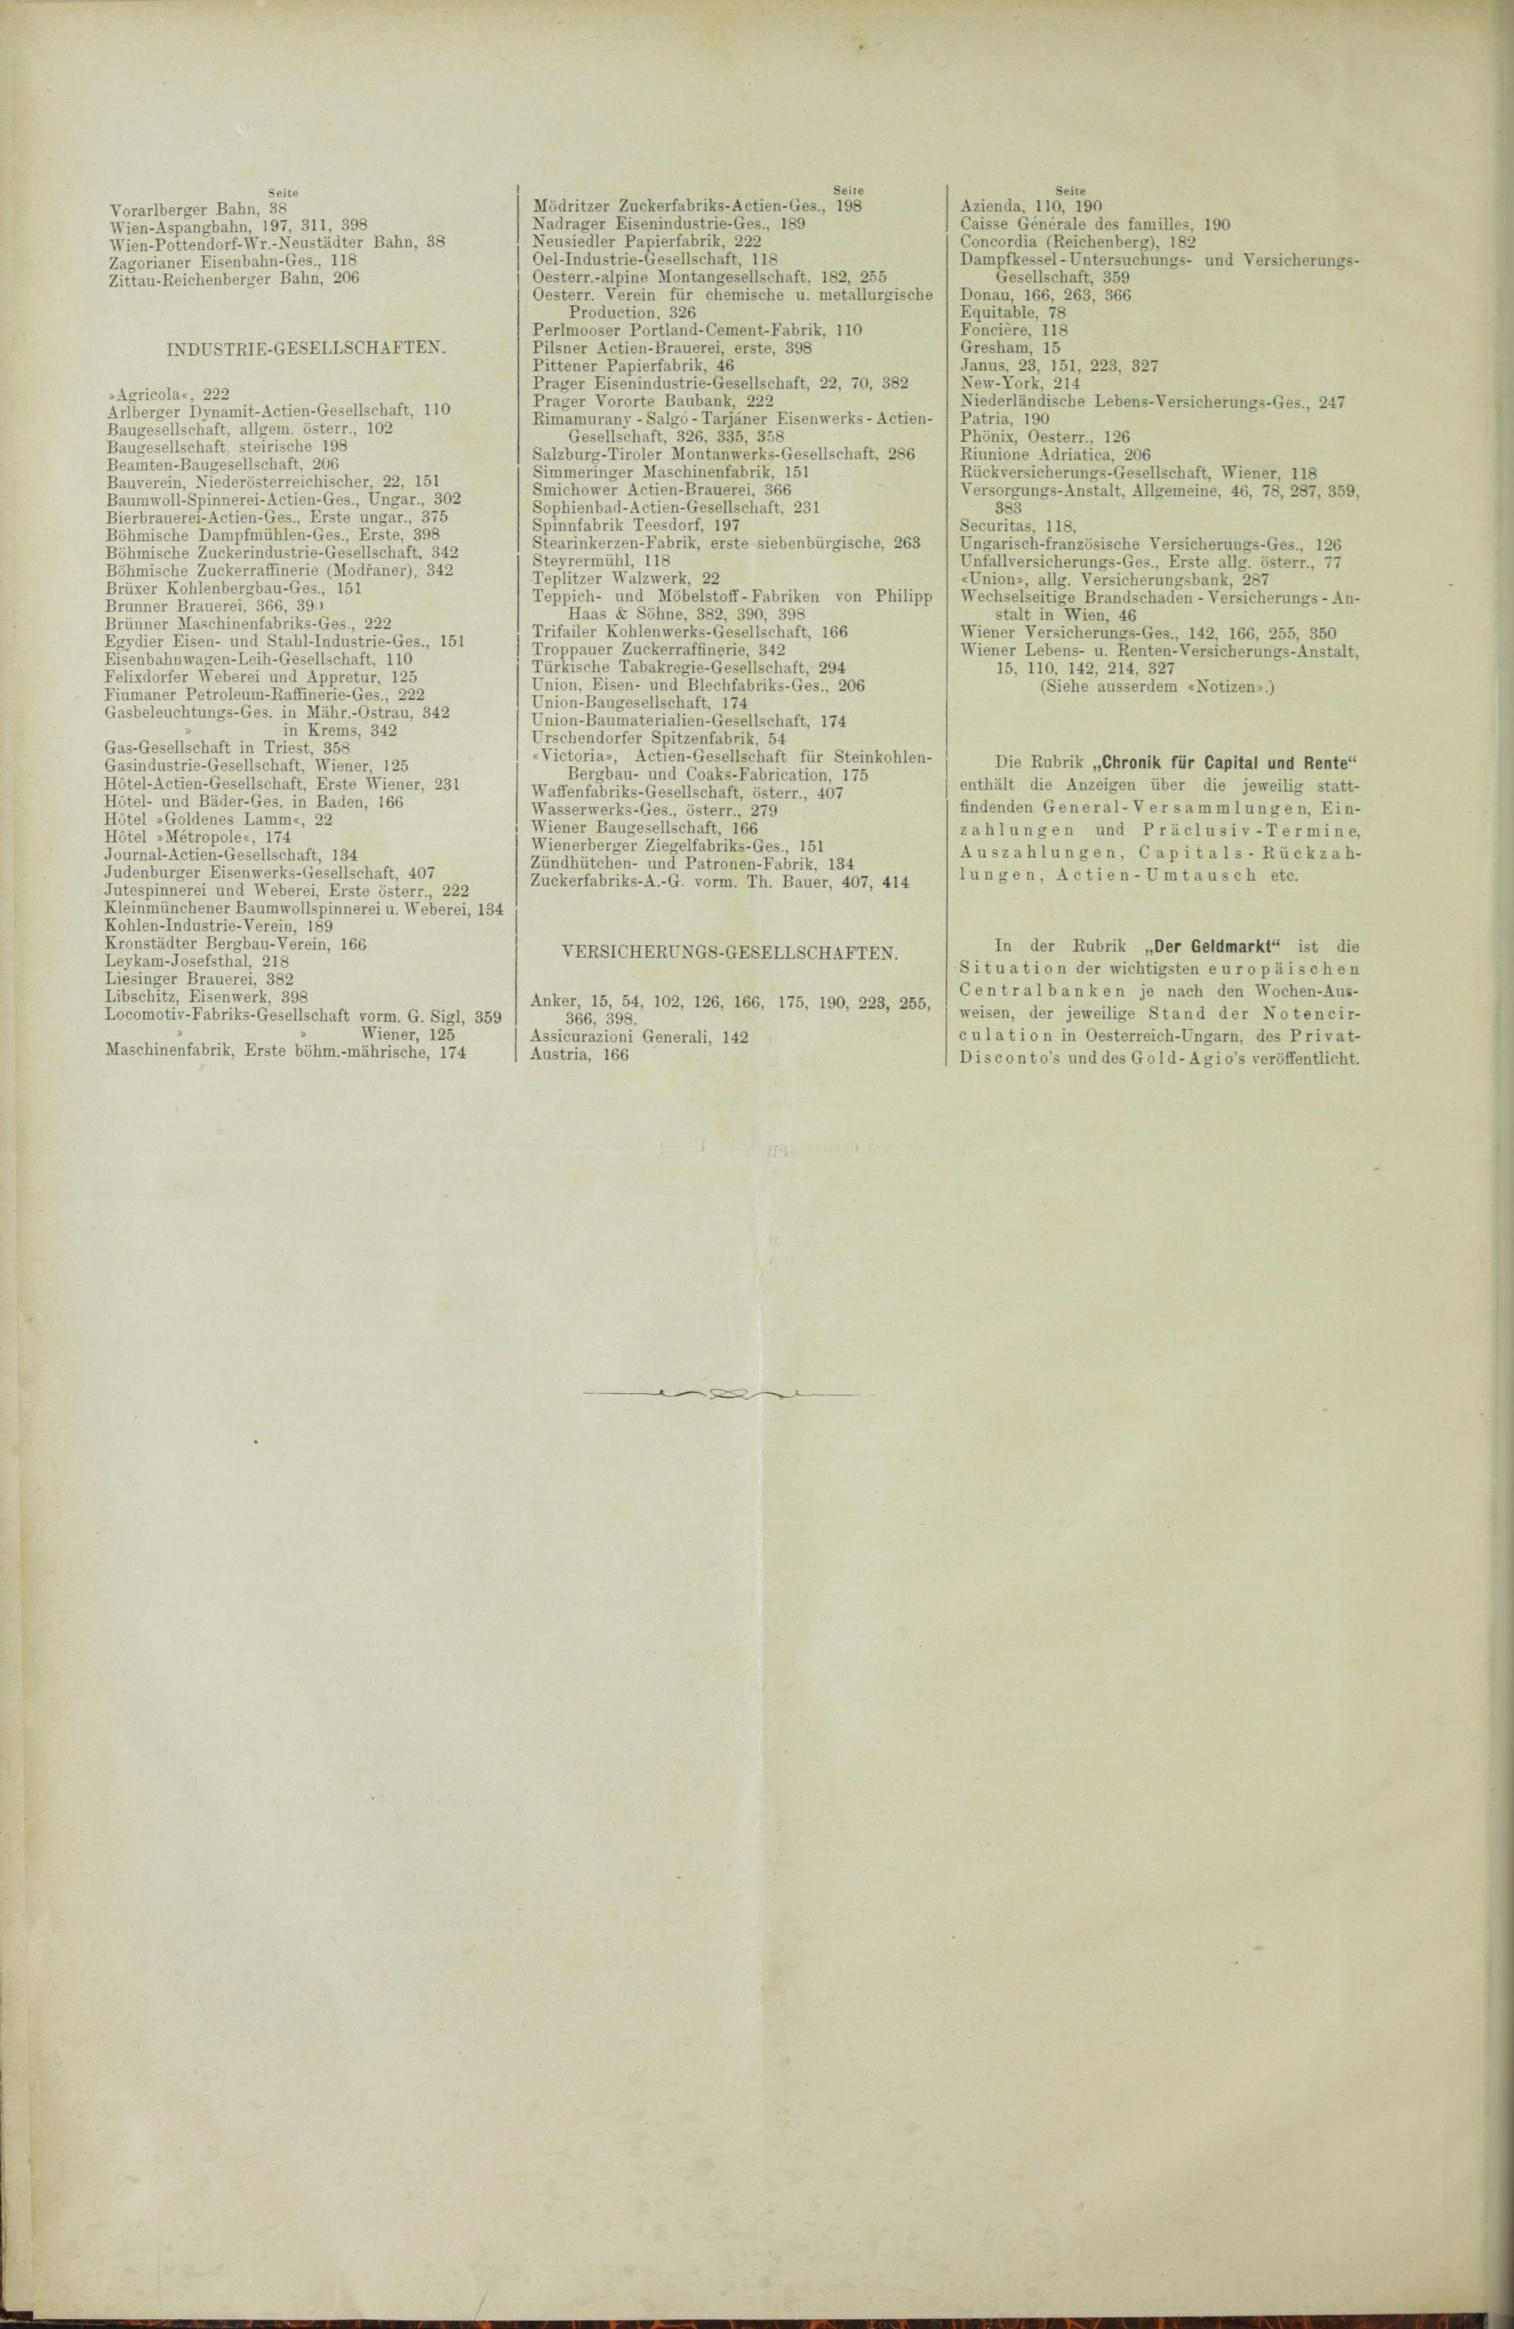 Der Tresor 01.07.1886 - Seite 12